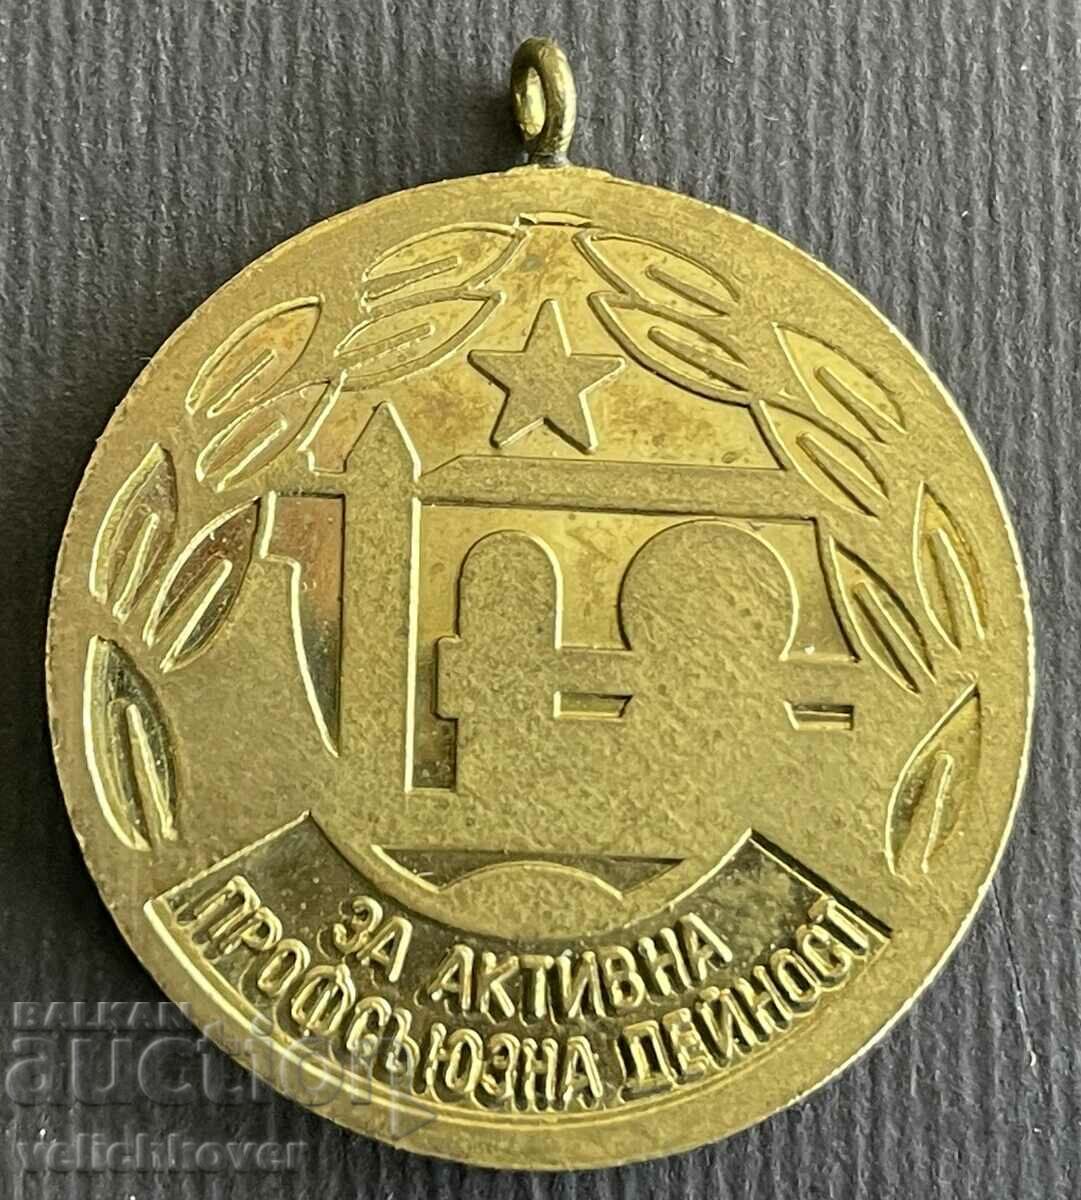 36736 България медал Активна профсъюзна дейност Строители